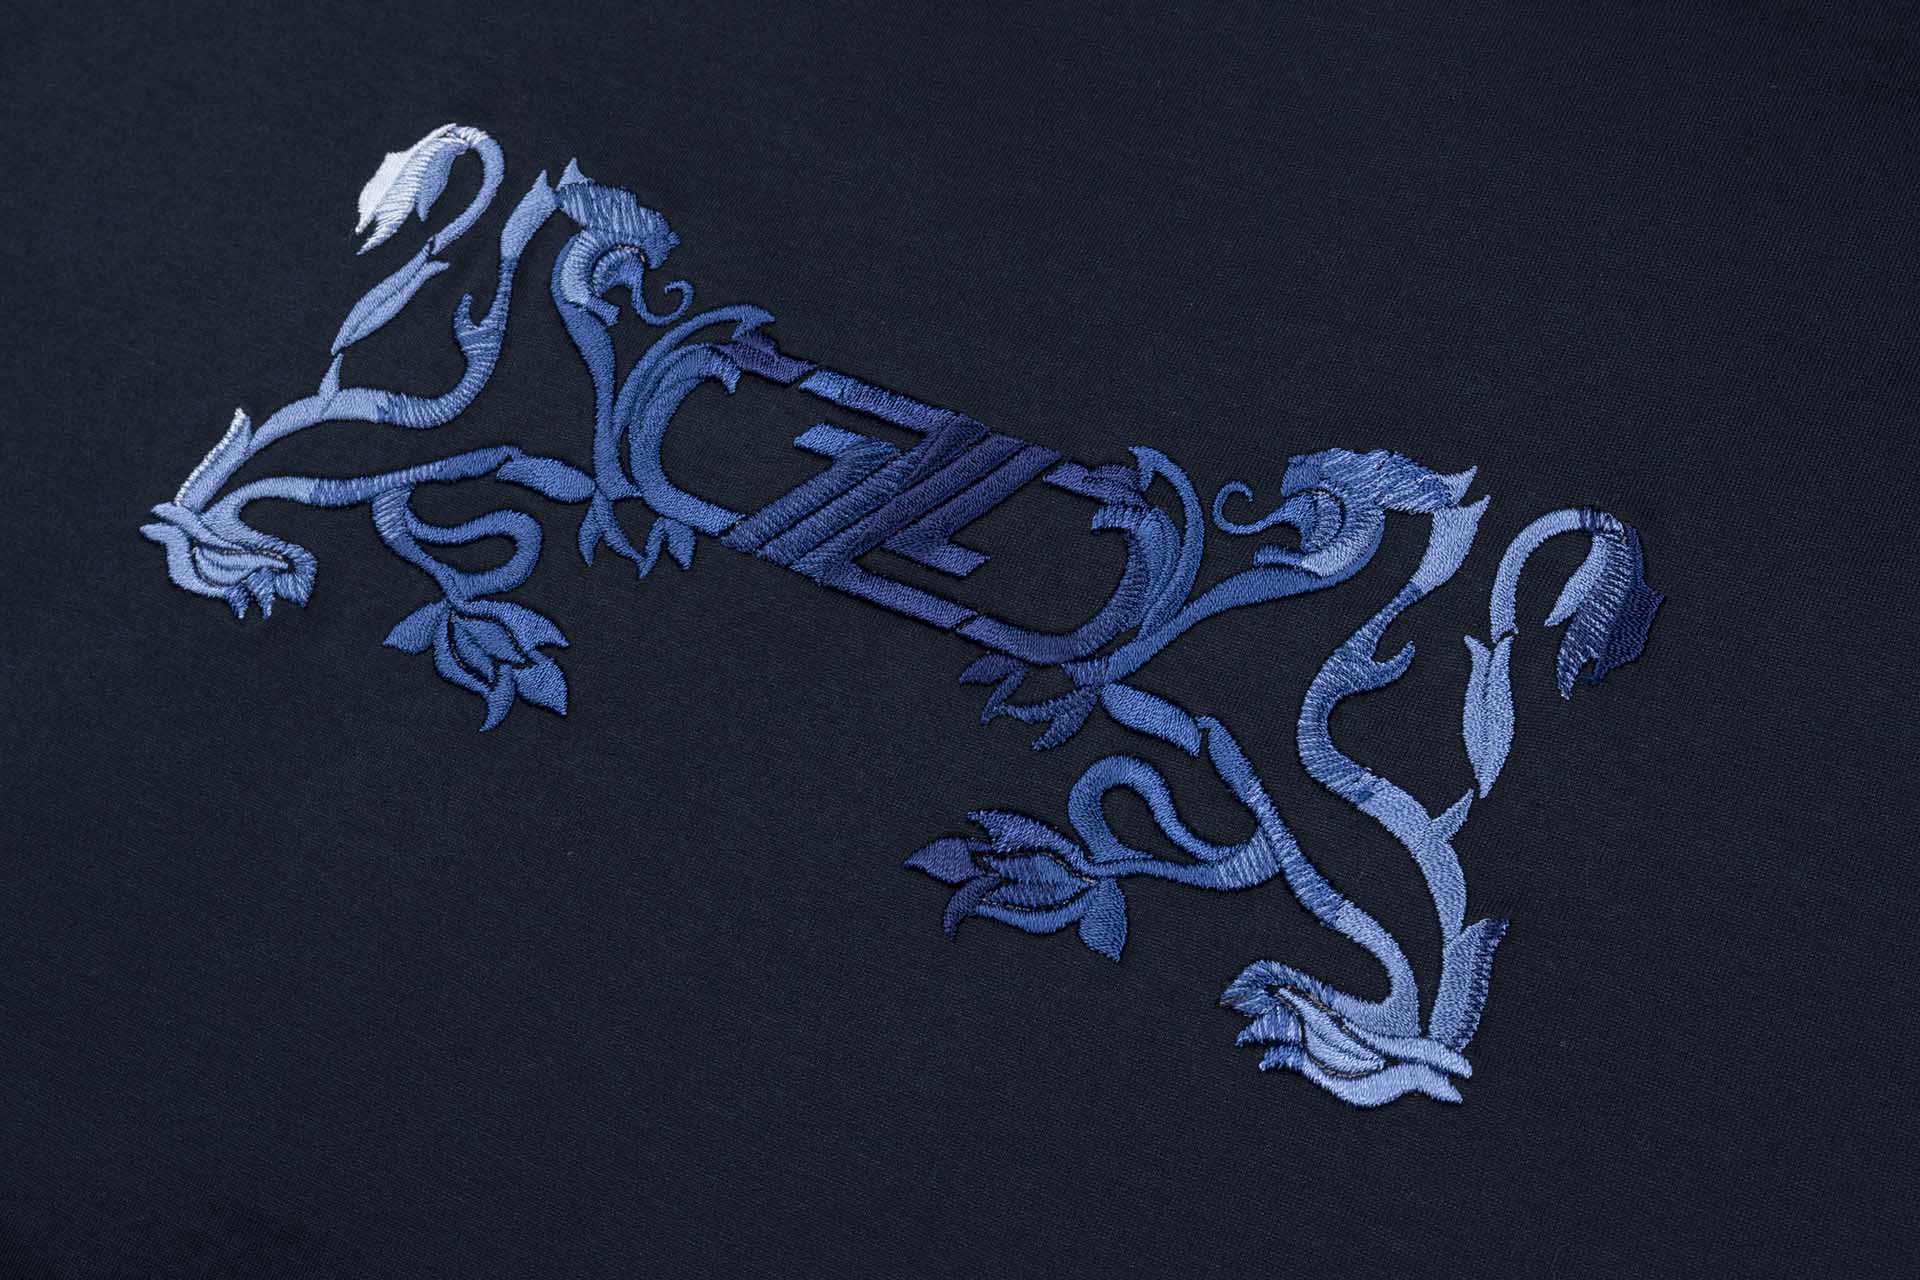 Ecru Tshirt, Double Griffon Embroidery - ZILLI